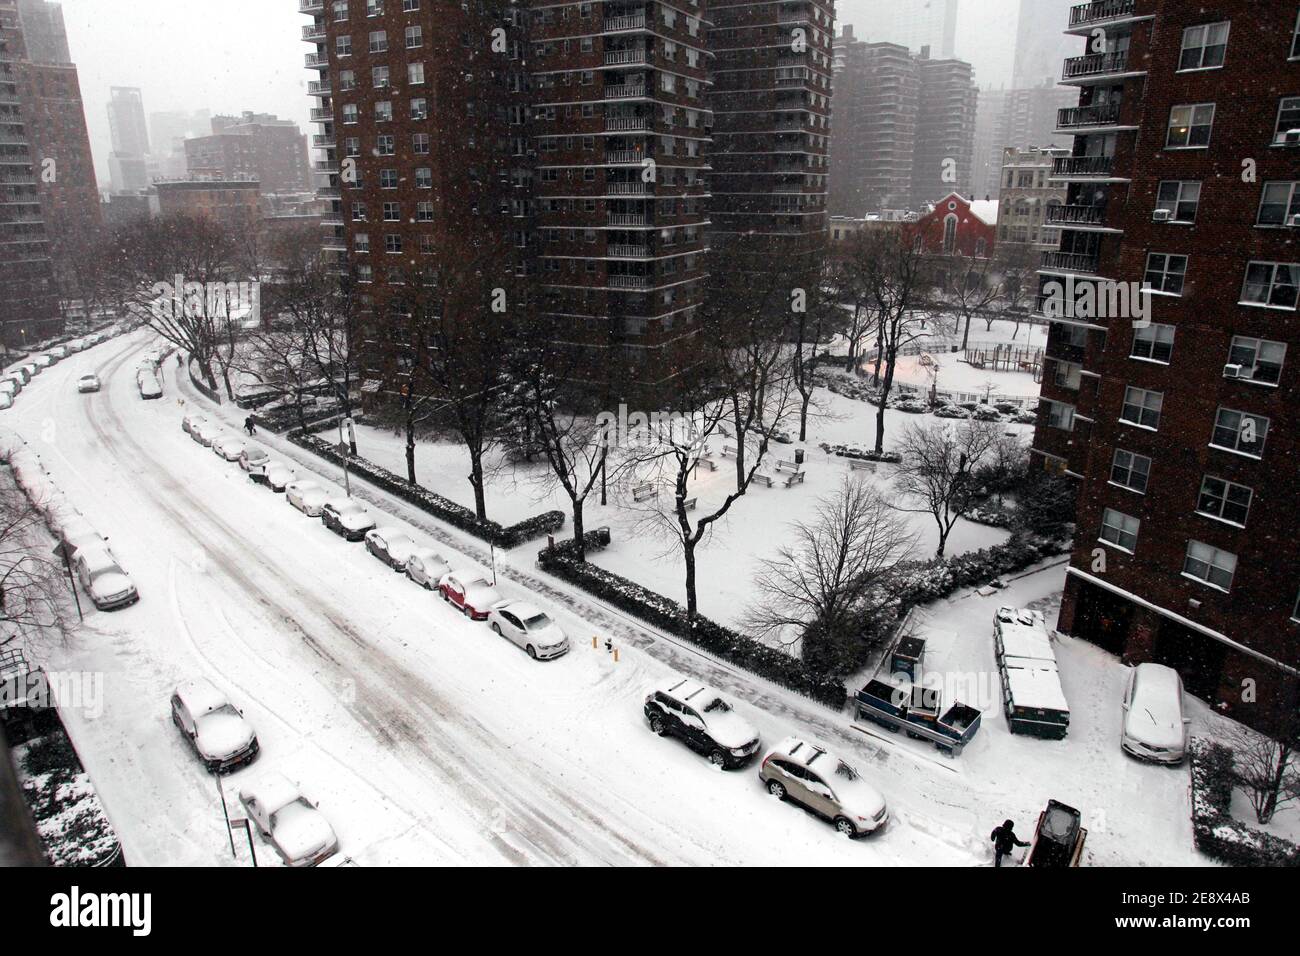 New York City, New York, Usa. Februar 2021. Schnee fällt auf den Chelsea-Teil von Manhattan, als ein großer Schneesturm die New York City Gegend heute überdeckte. Es wird vorhergesagt, dass die Stadt bis zu zwei Fuß Schnee bekommen könnte, bevor der Sturm nachlässt. Quelle: Adam Stoltman/Alamy Live News Stockfoto